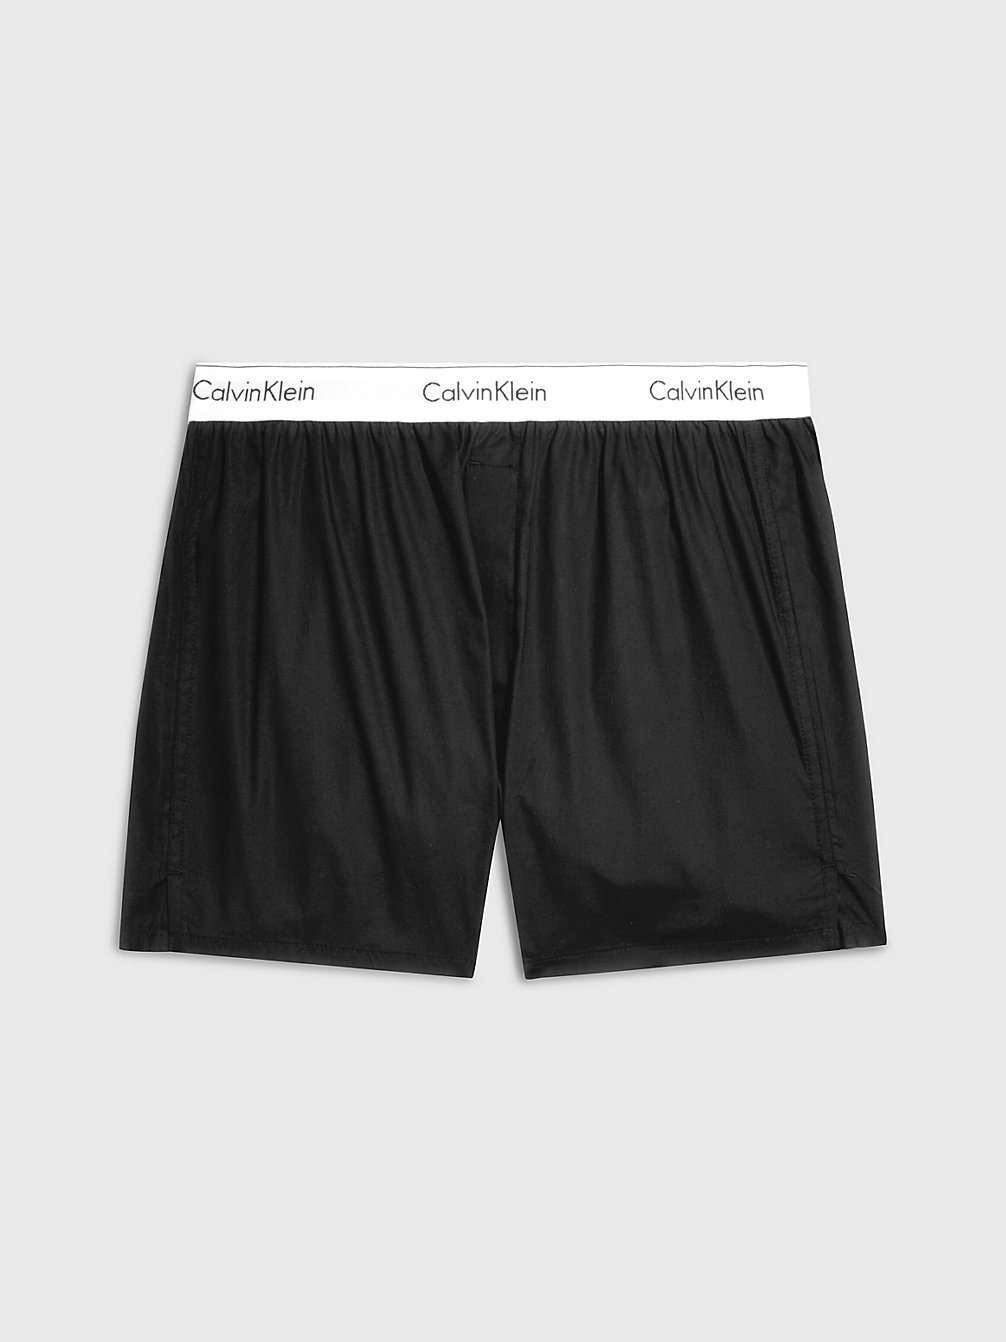 BLACK Slim Fit Boxershorts - Modern Cotton undefined Herren Calvin Klein